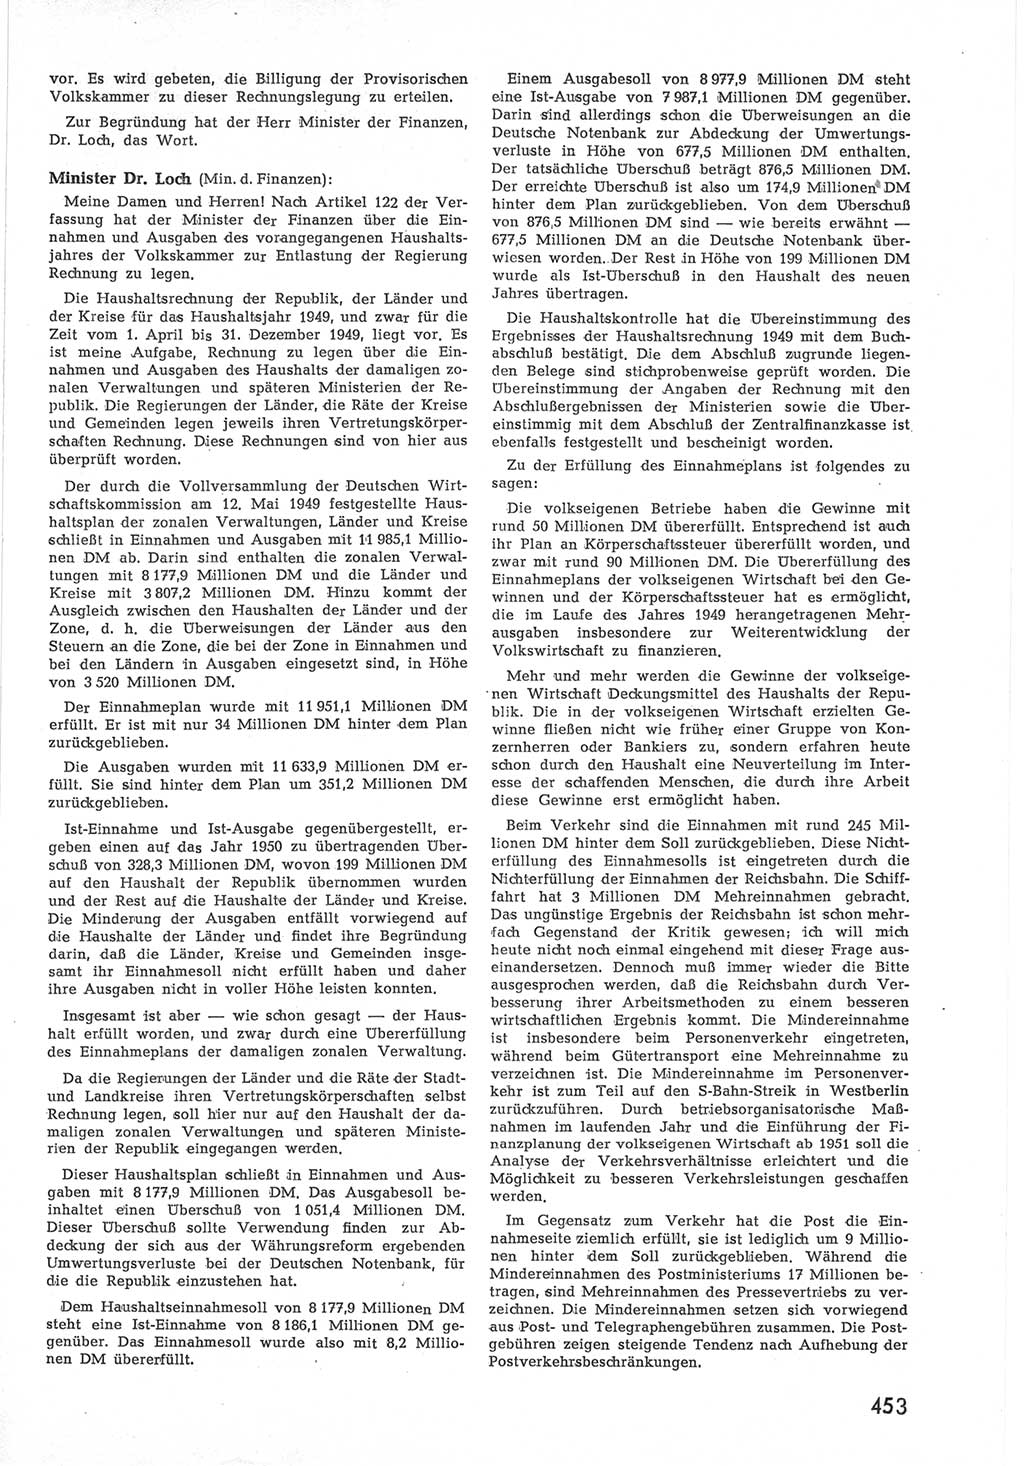 Provisorische Volkskammer (VK) der Deutschen Demokratischen Republik (DDR) 1949-1950, Dokument 471 (Prov. VK DDR 1949-1950, Dok. 471)